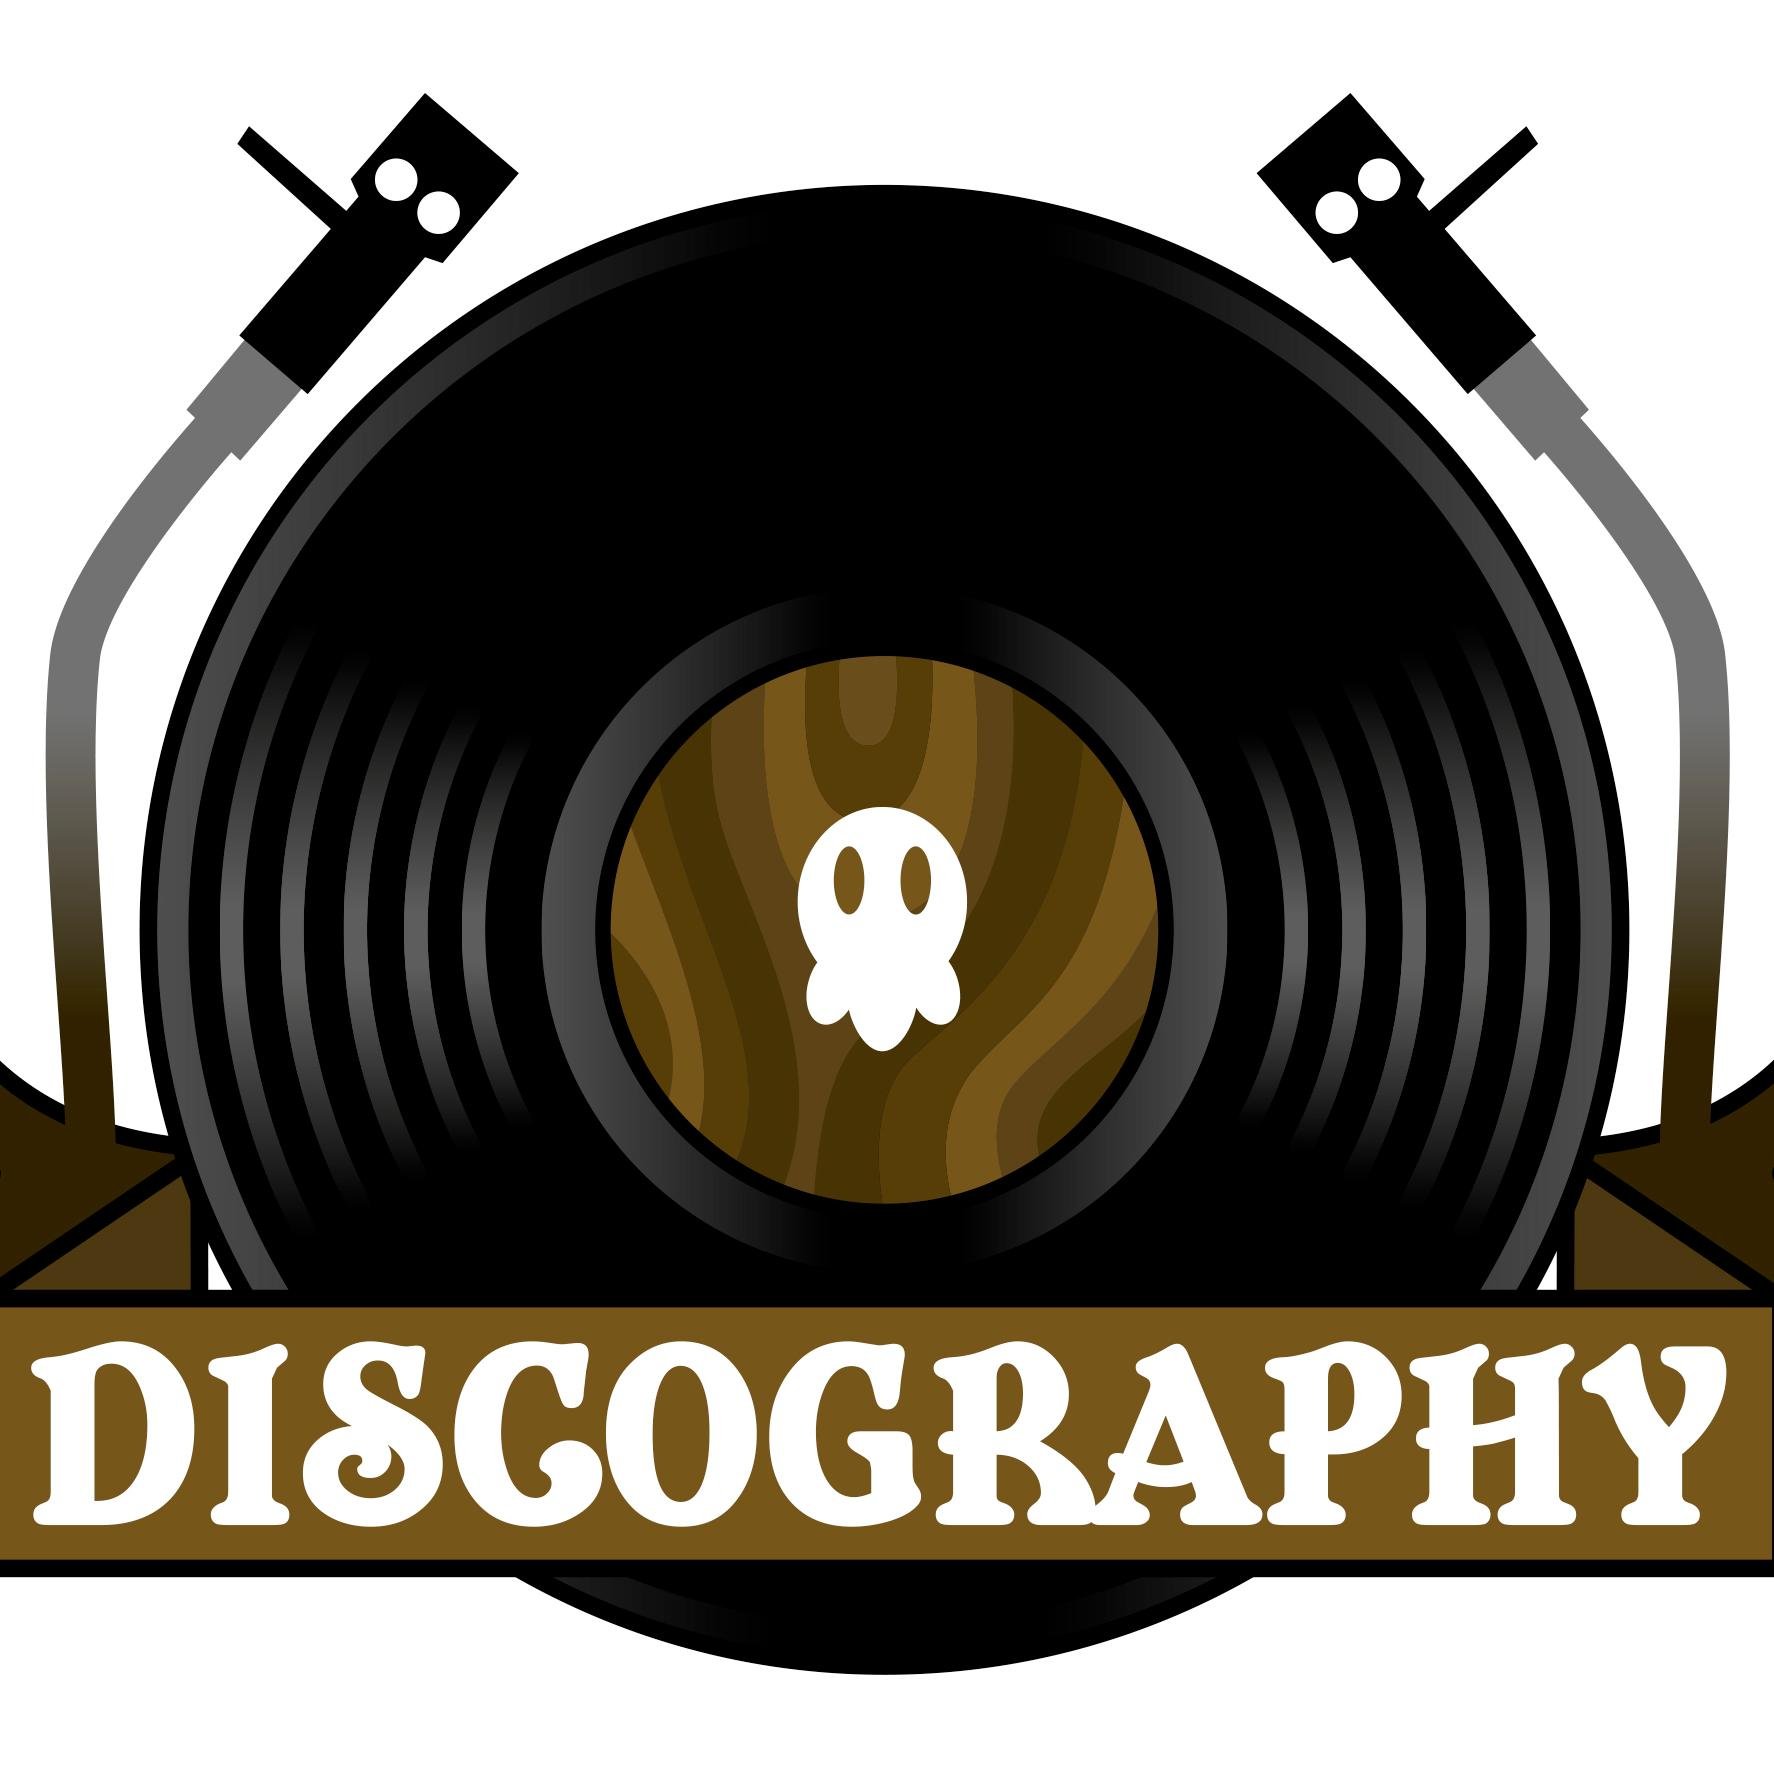 Дискография. Discography логотип. Дискография надпись. Дискография для записи музыки.